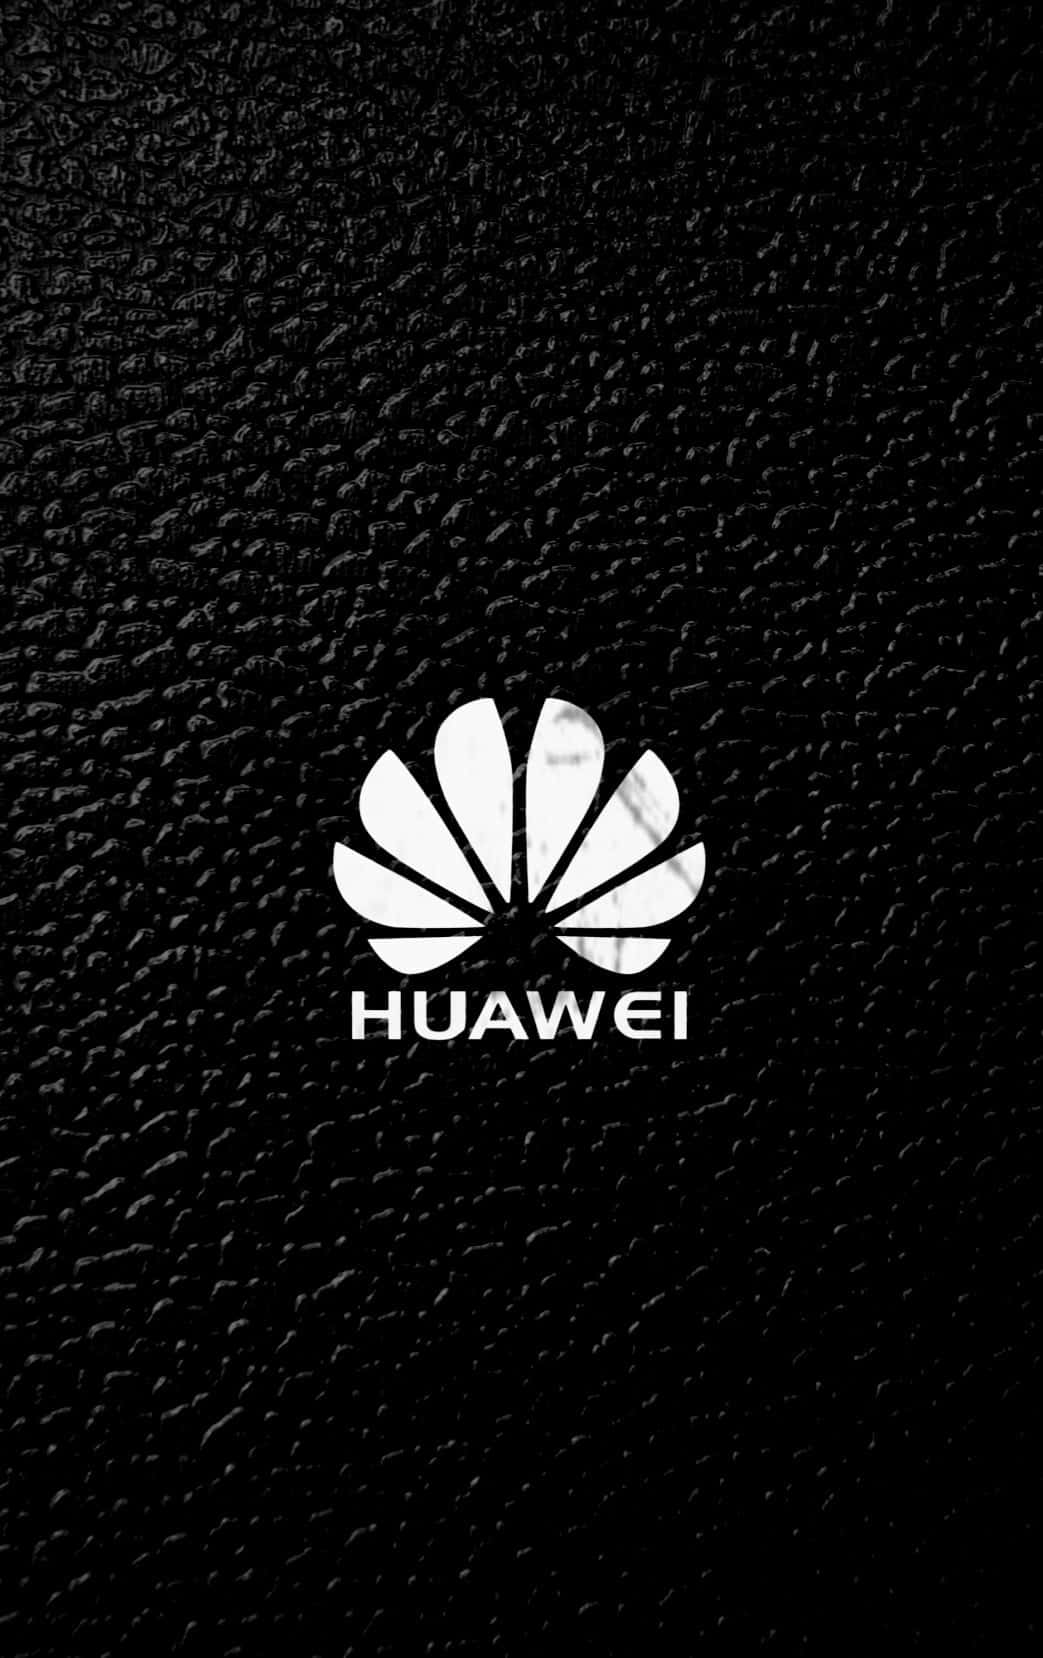 Desbloqueieum Mundo De Possibilidades Infinitas Com A Huawei.